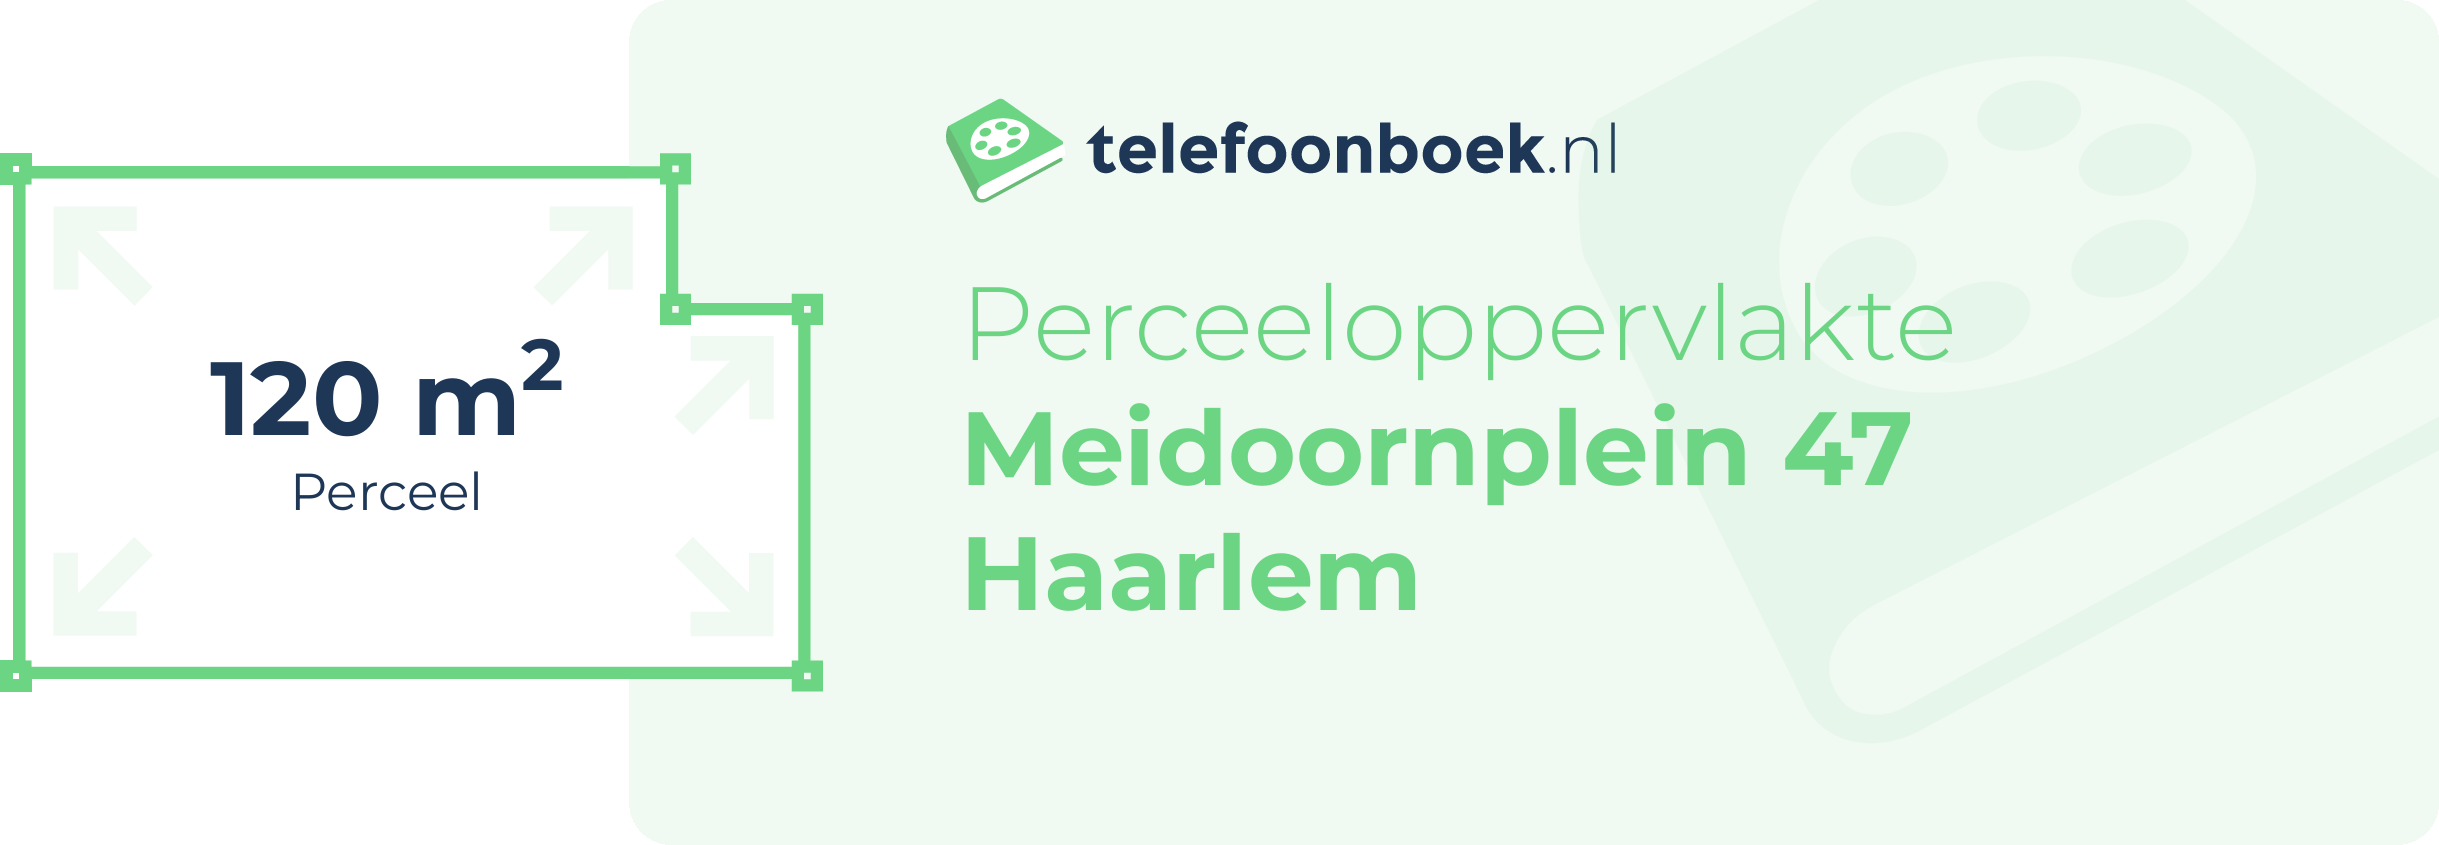 Perceeloppervlakte Meidoornplein 47 Haarlem